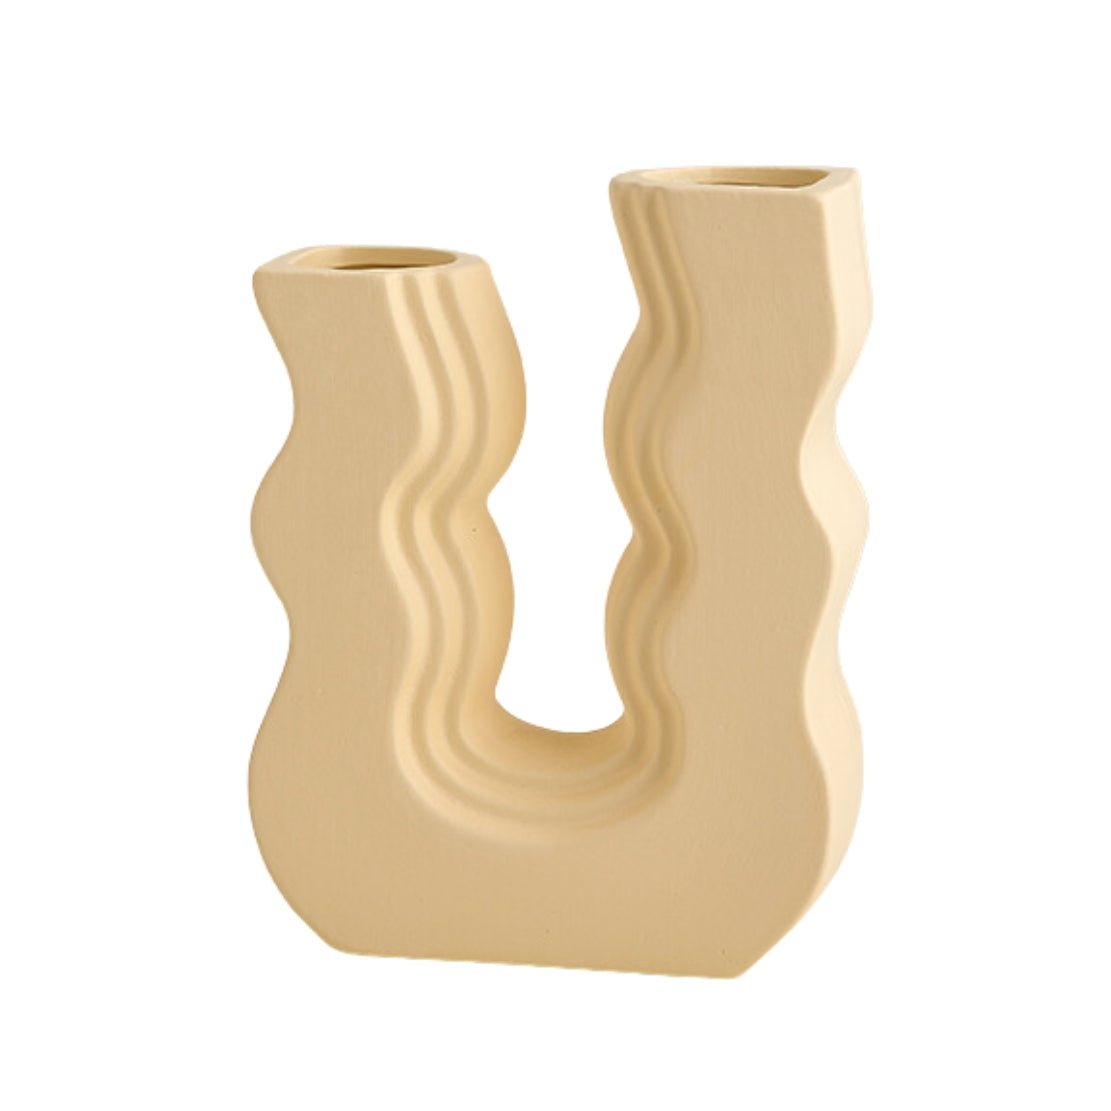 Yellow, ceramic, wiggle U shaped vase